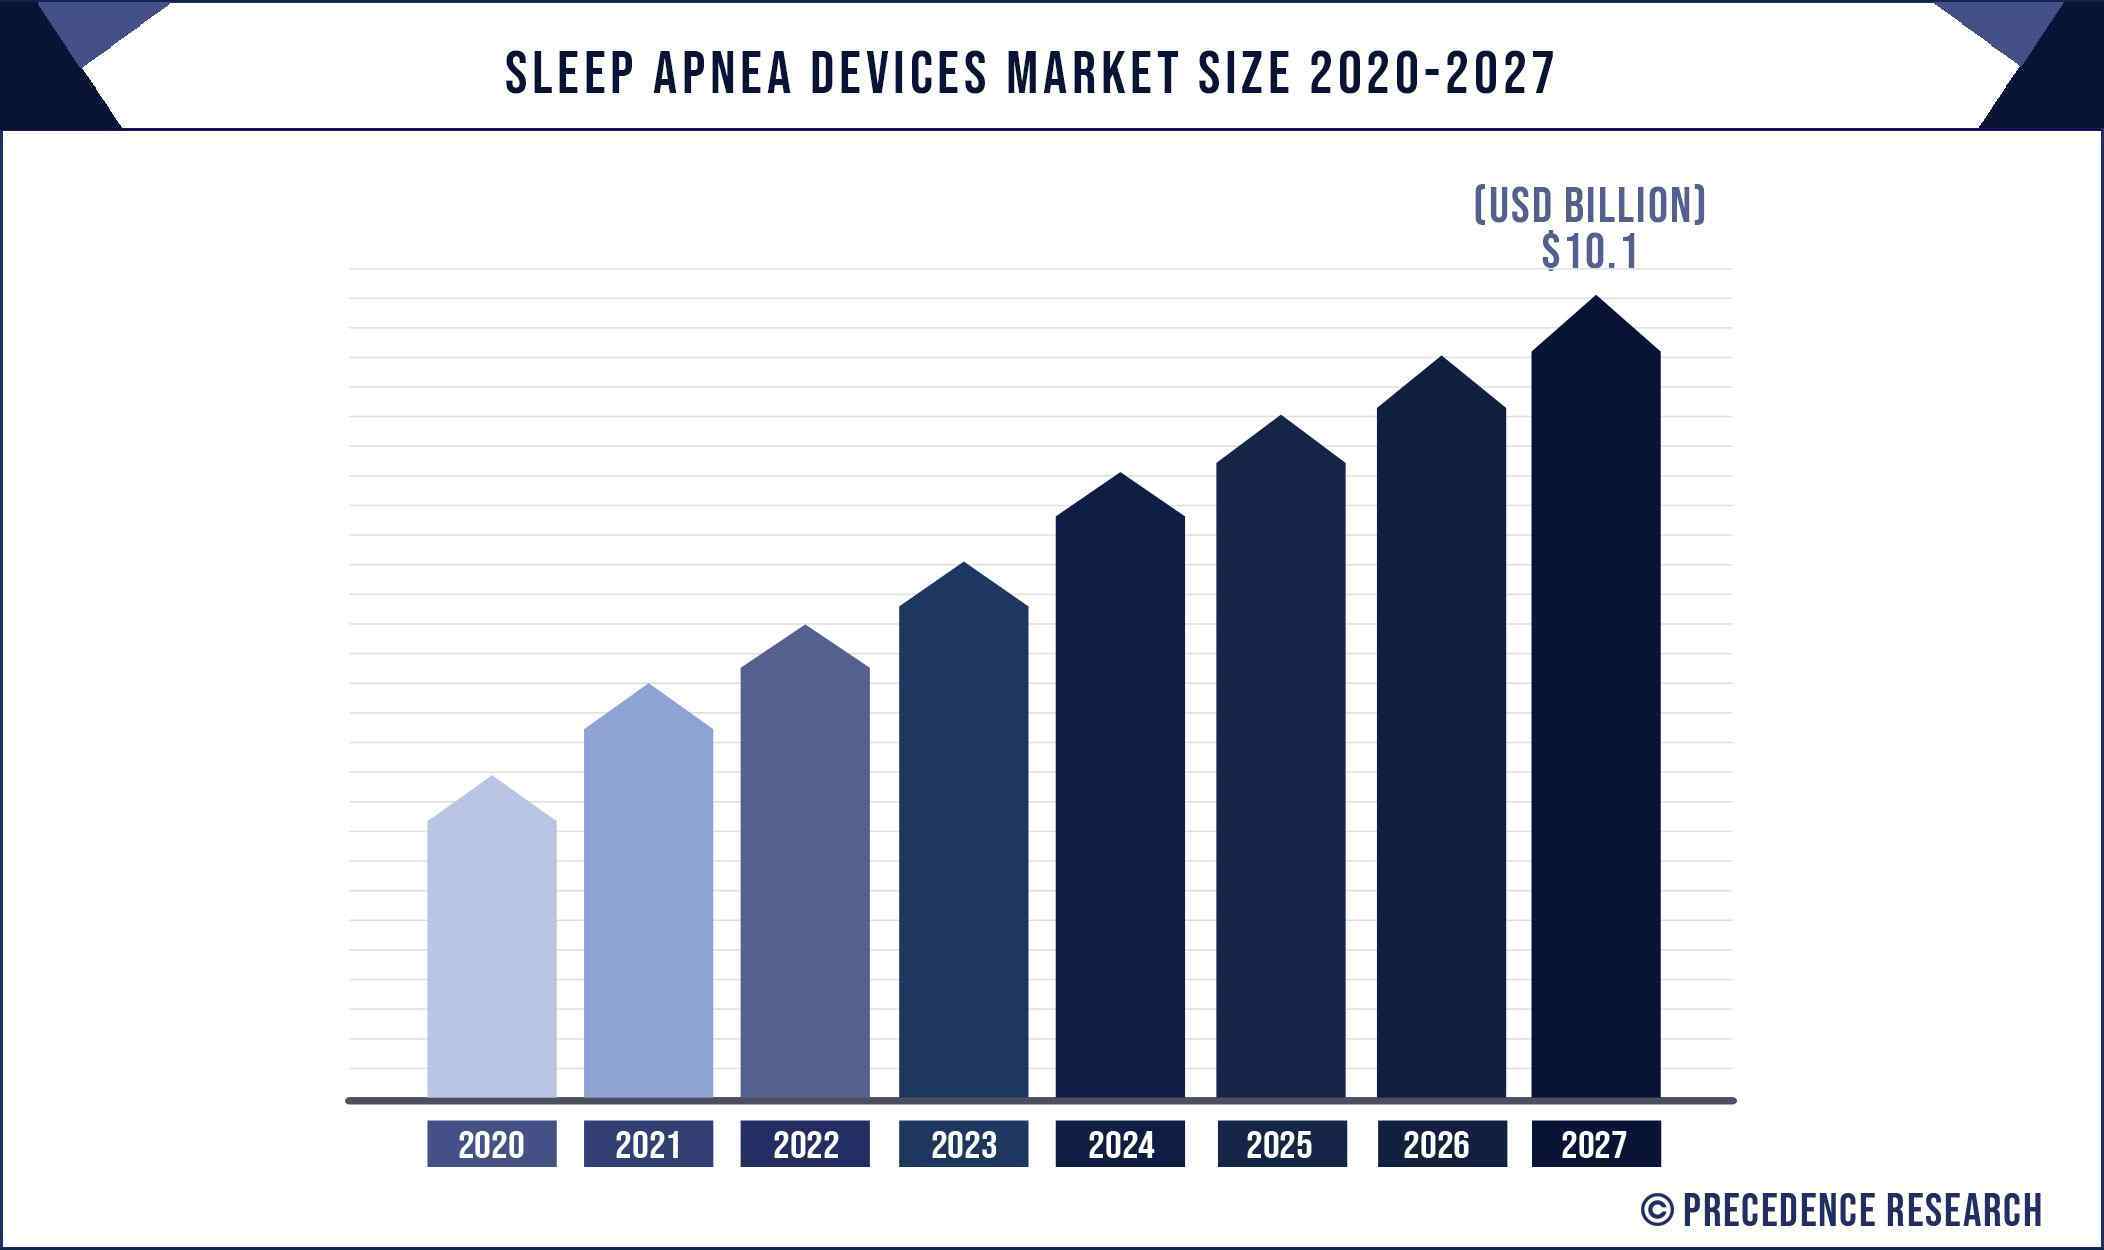 Sleep Apnea Devices Market Size 2020 to 2027